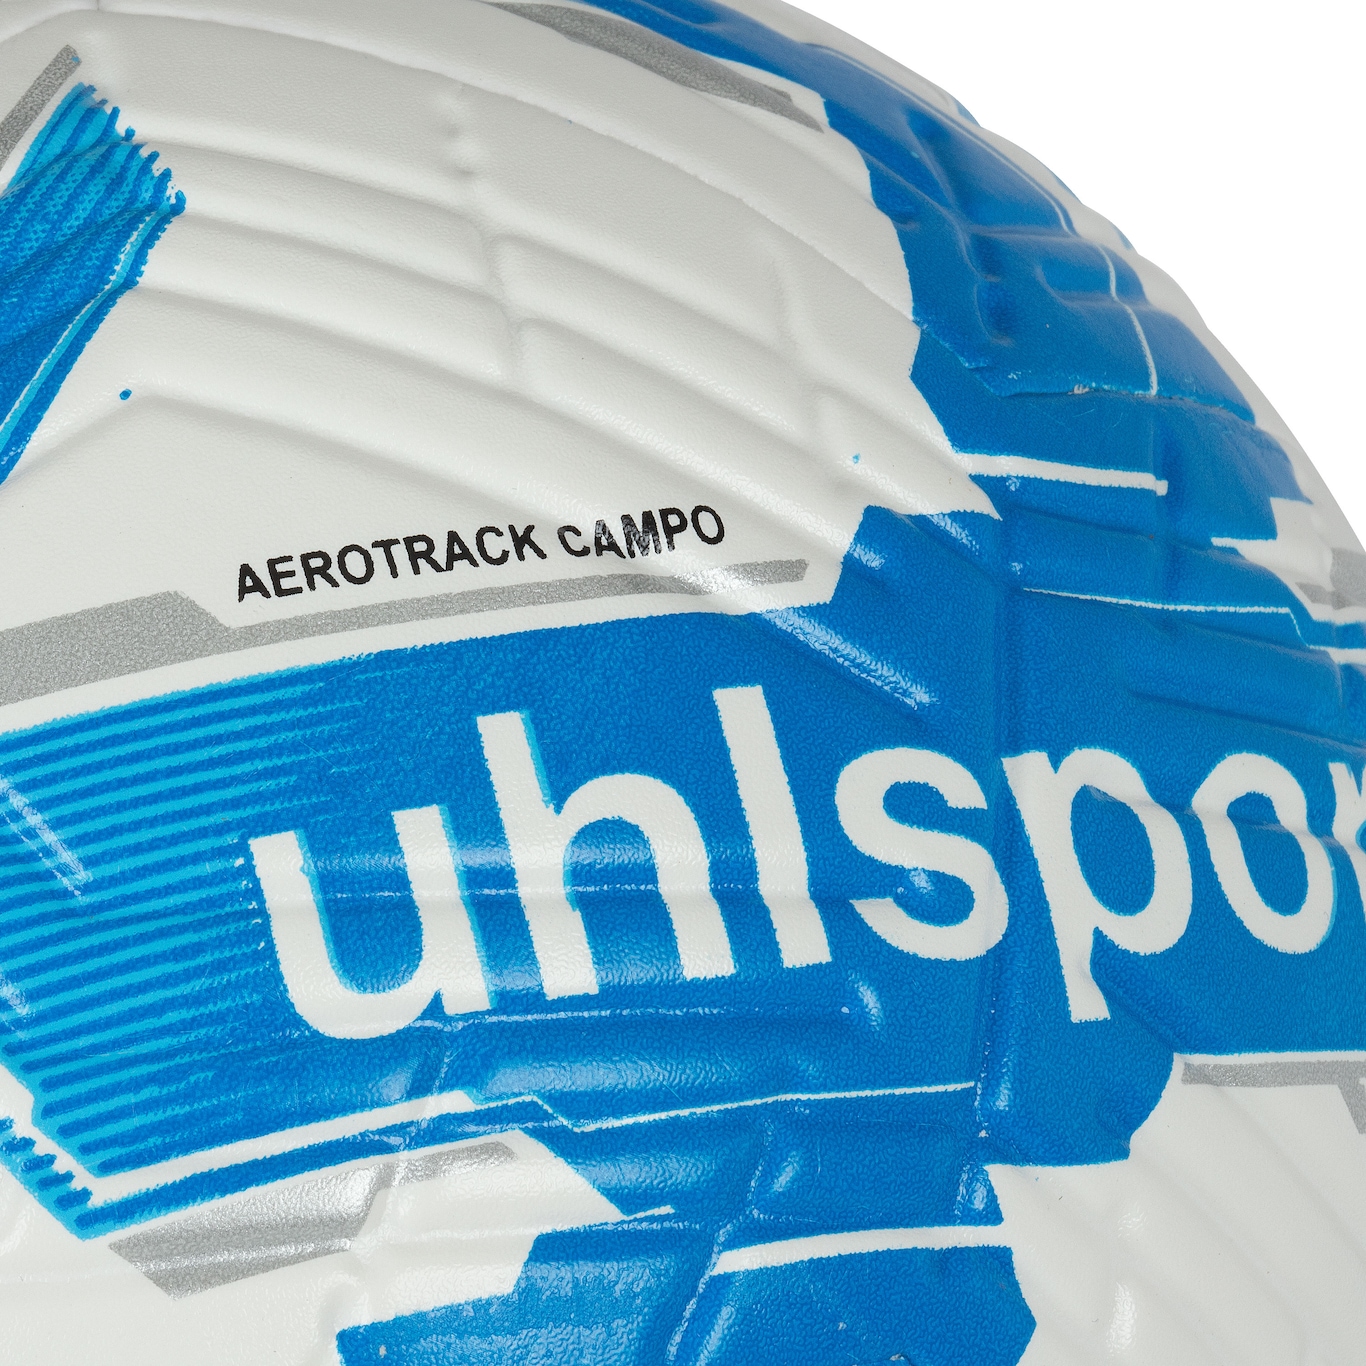 Bola de Futebol de Campo Uhlsport Aerotrack - Foto 4